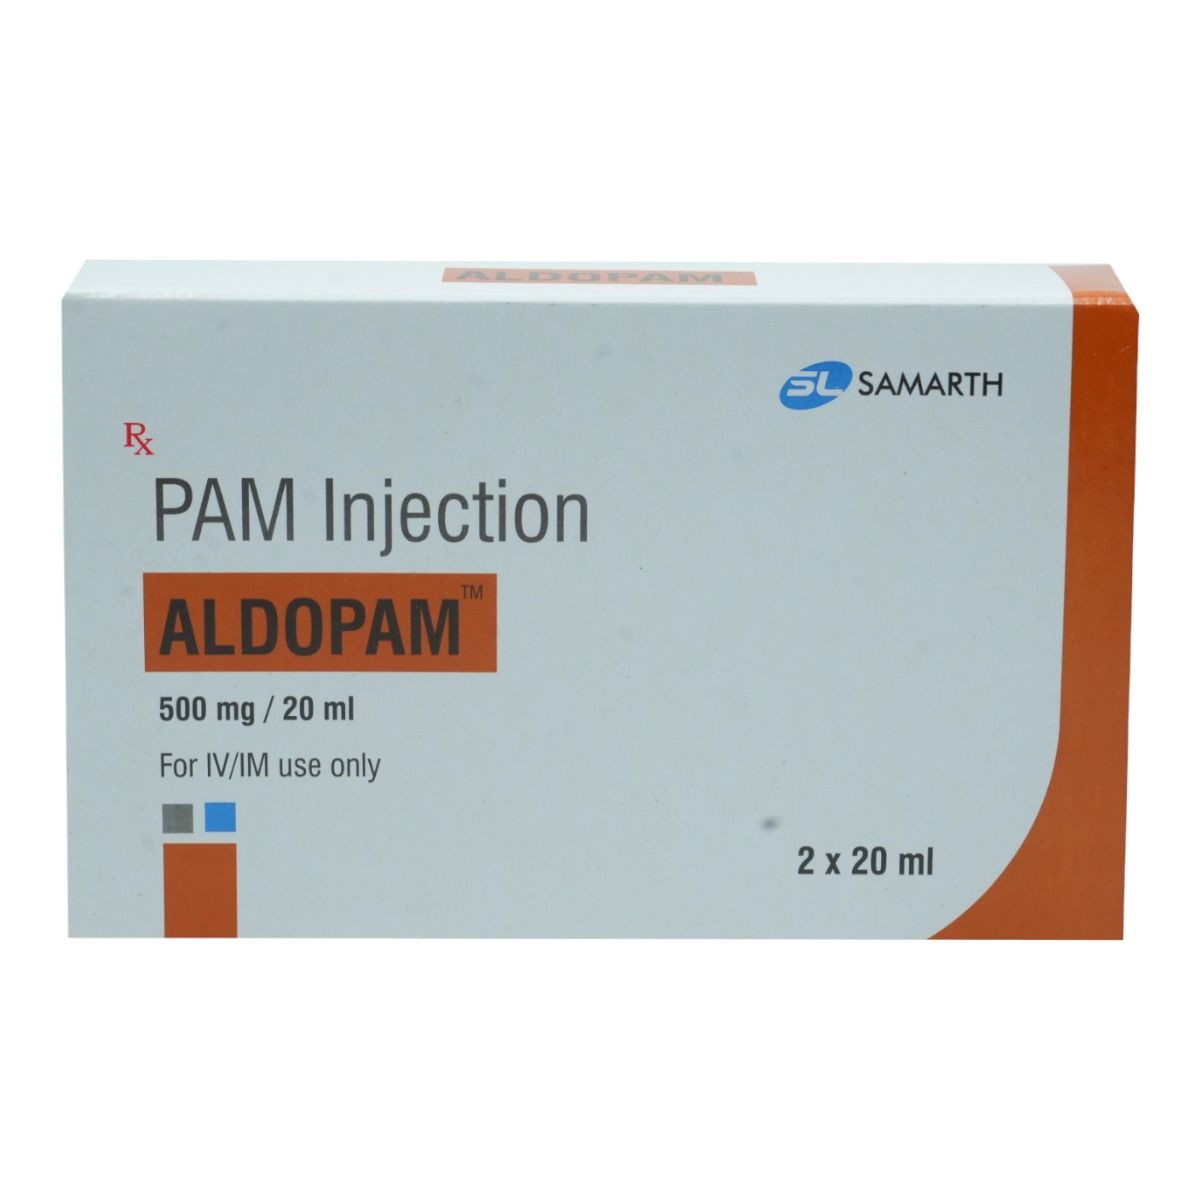 Buy Aldopam Injection 20 ml Online